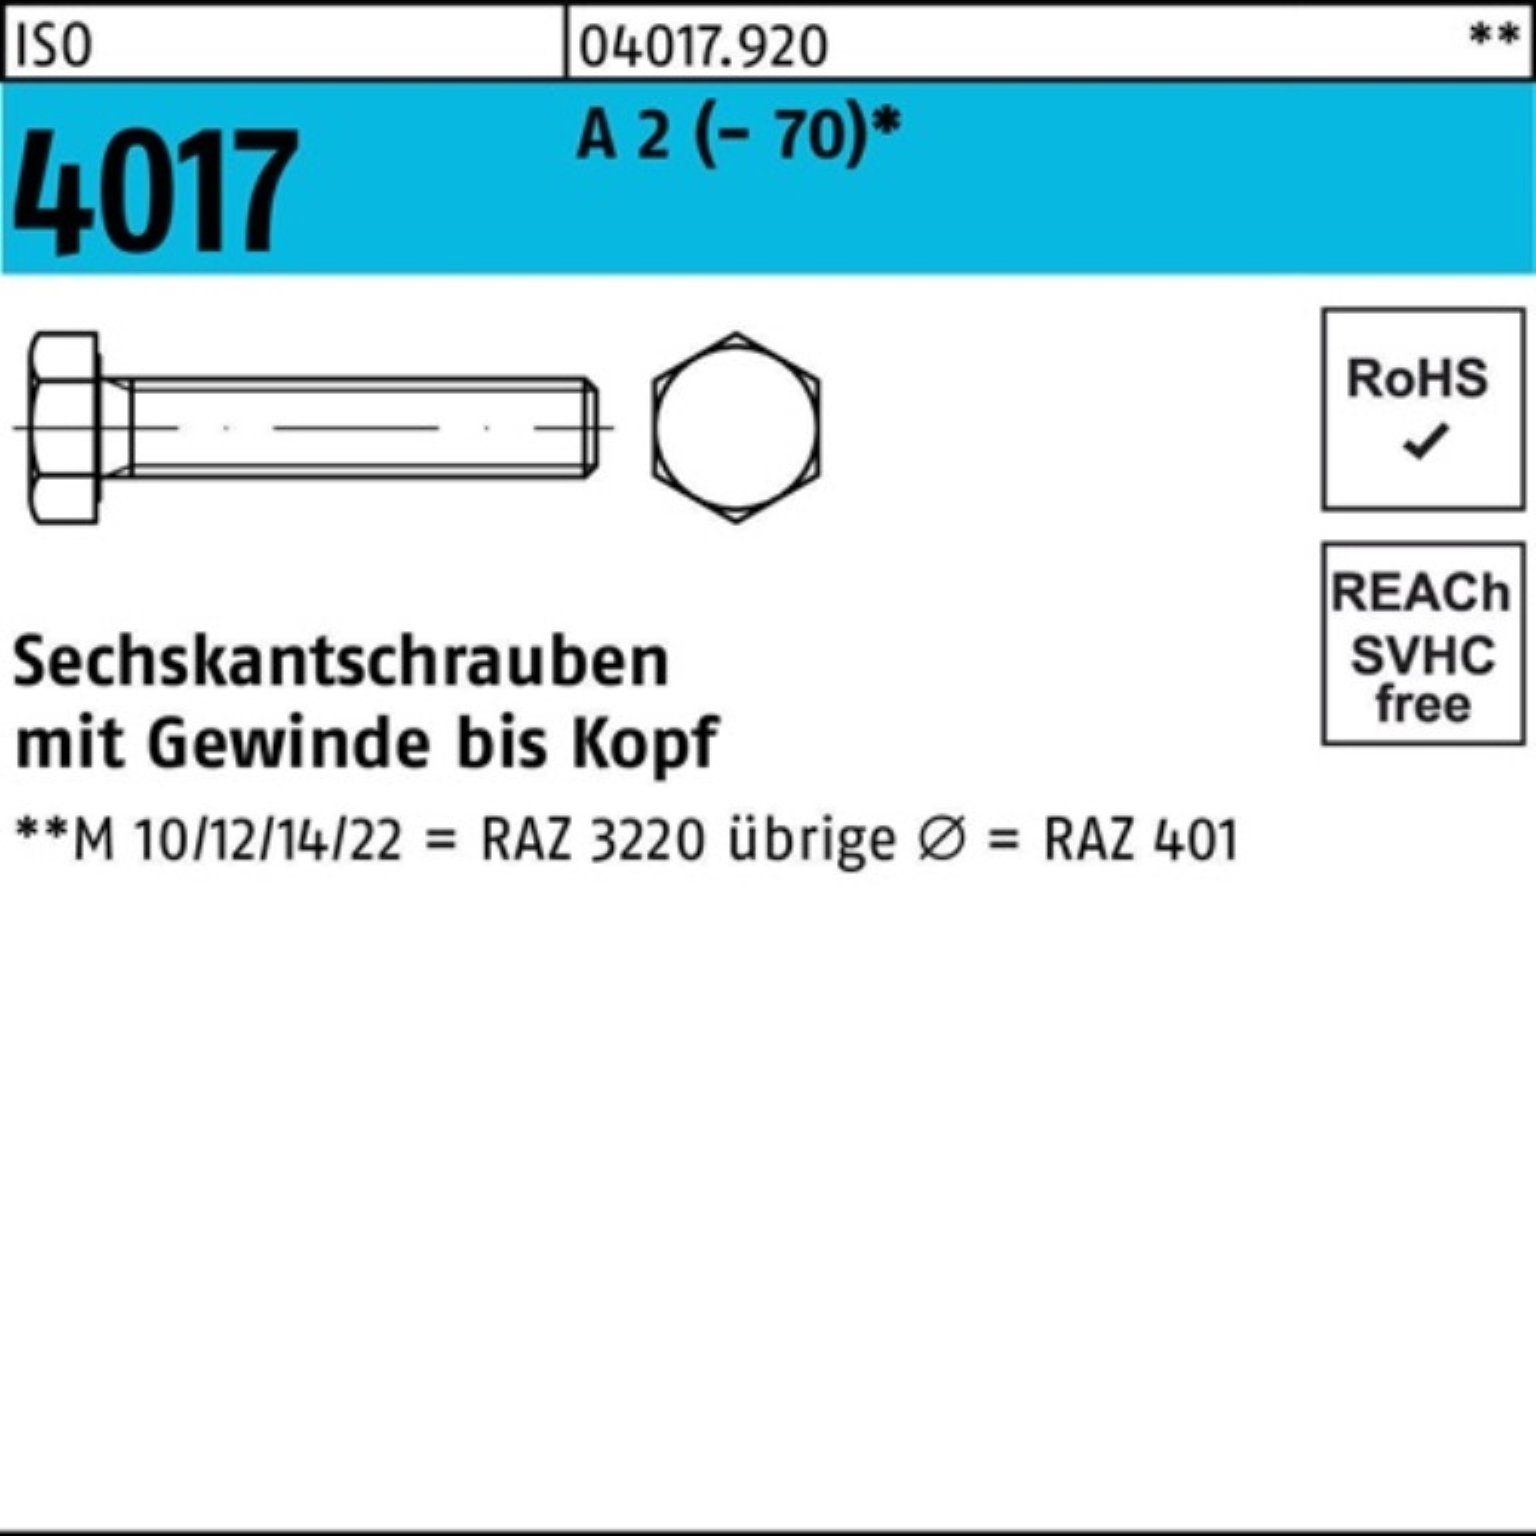 Bufab Sechskantschraube 100er Pack Sechskantschraube ISO 4017 VG M12x 55 A 2 (70) 50 Stück